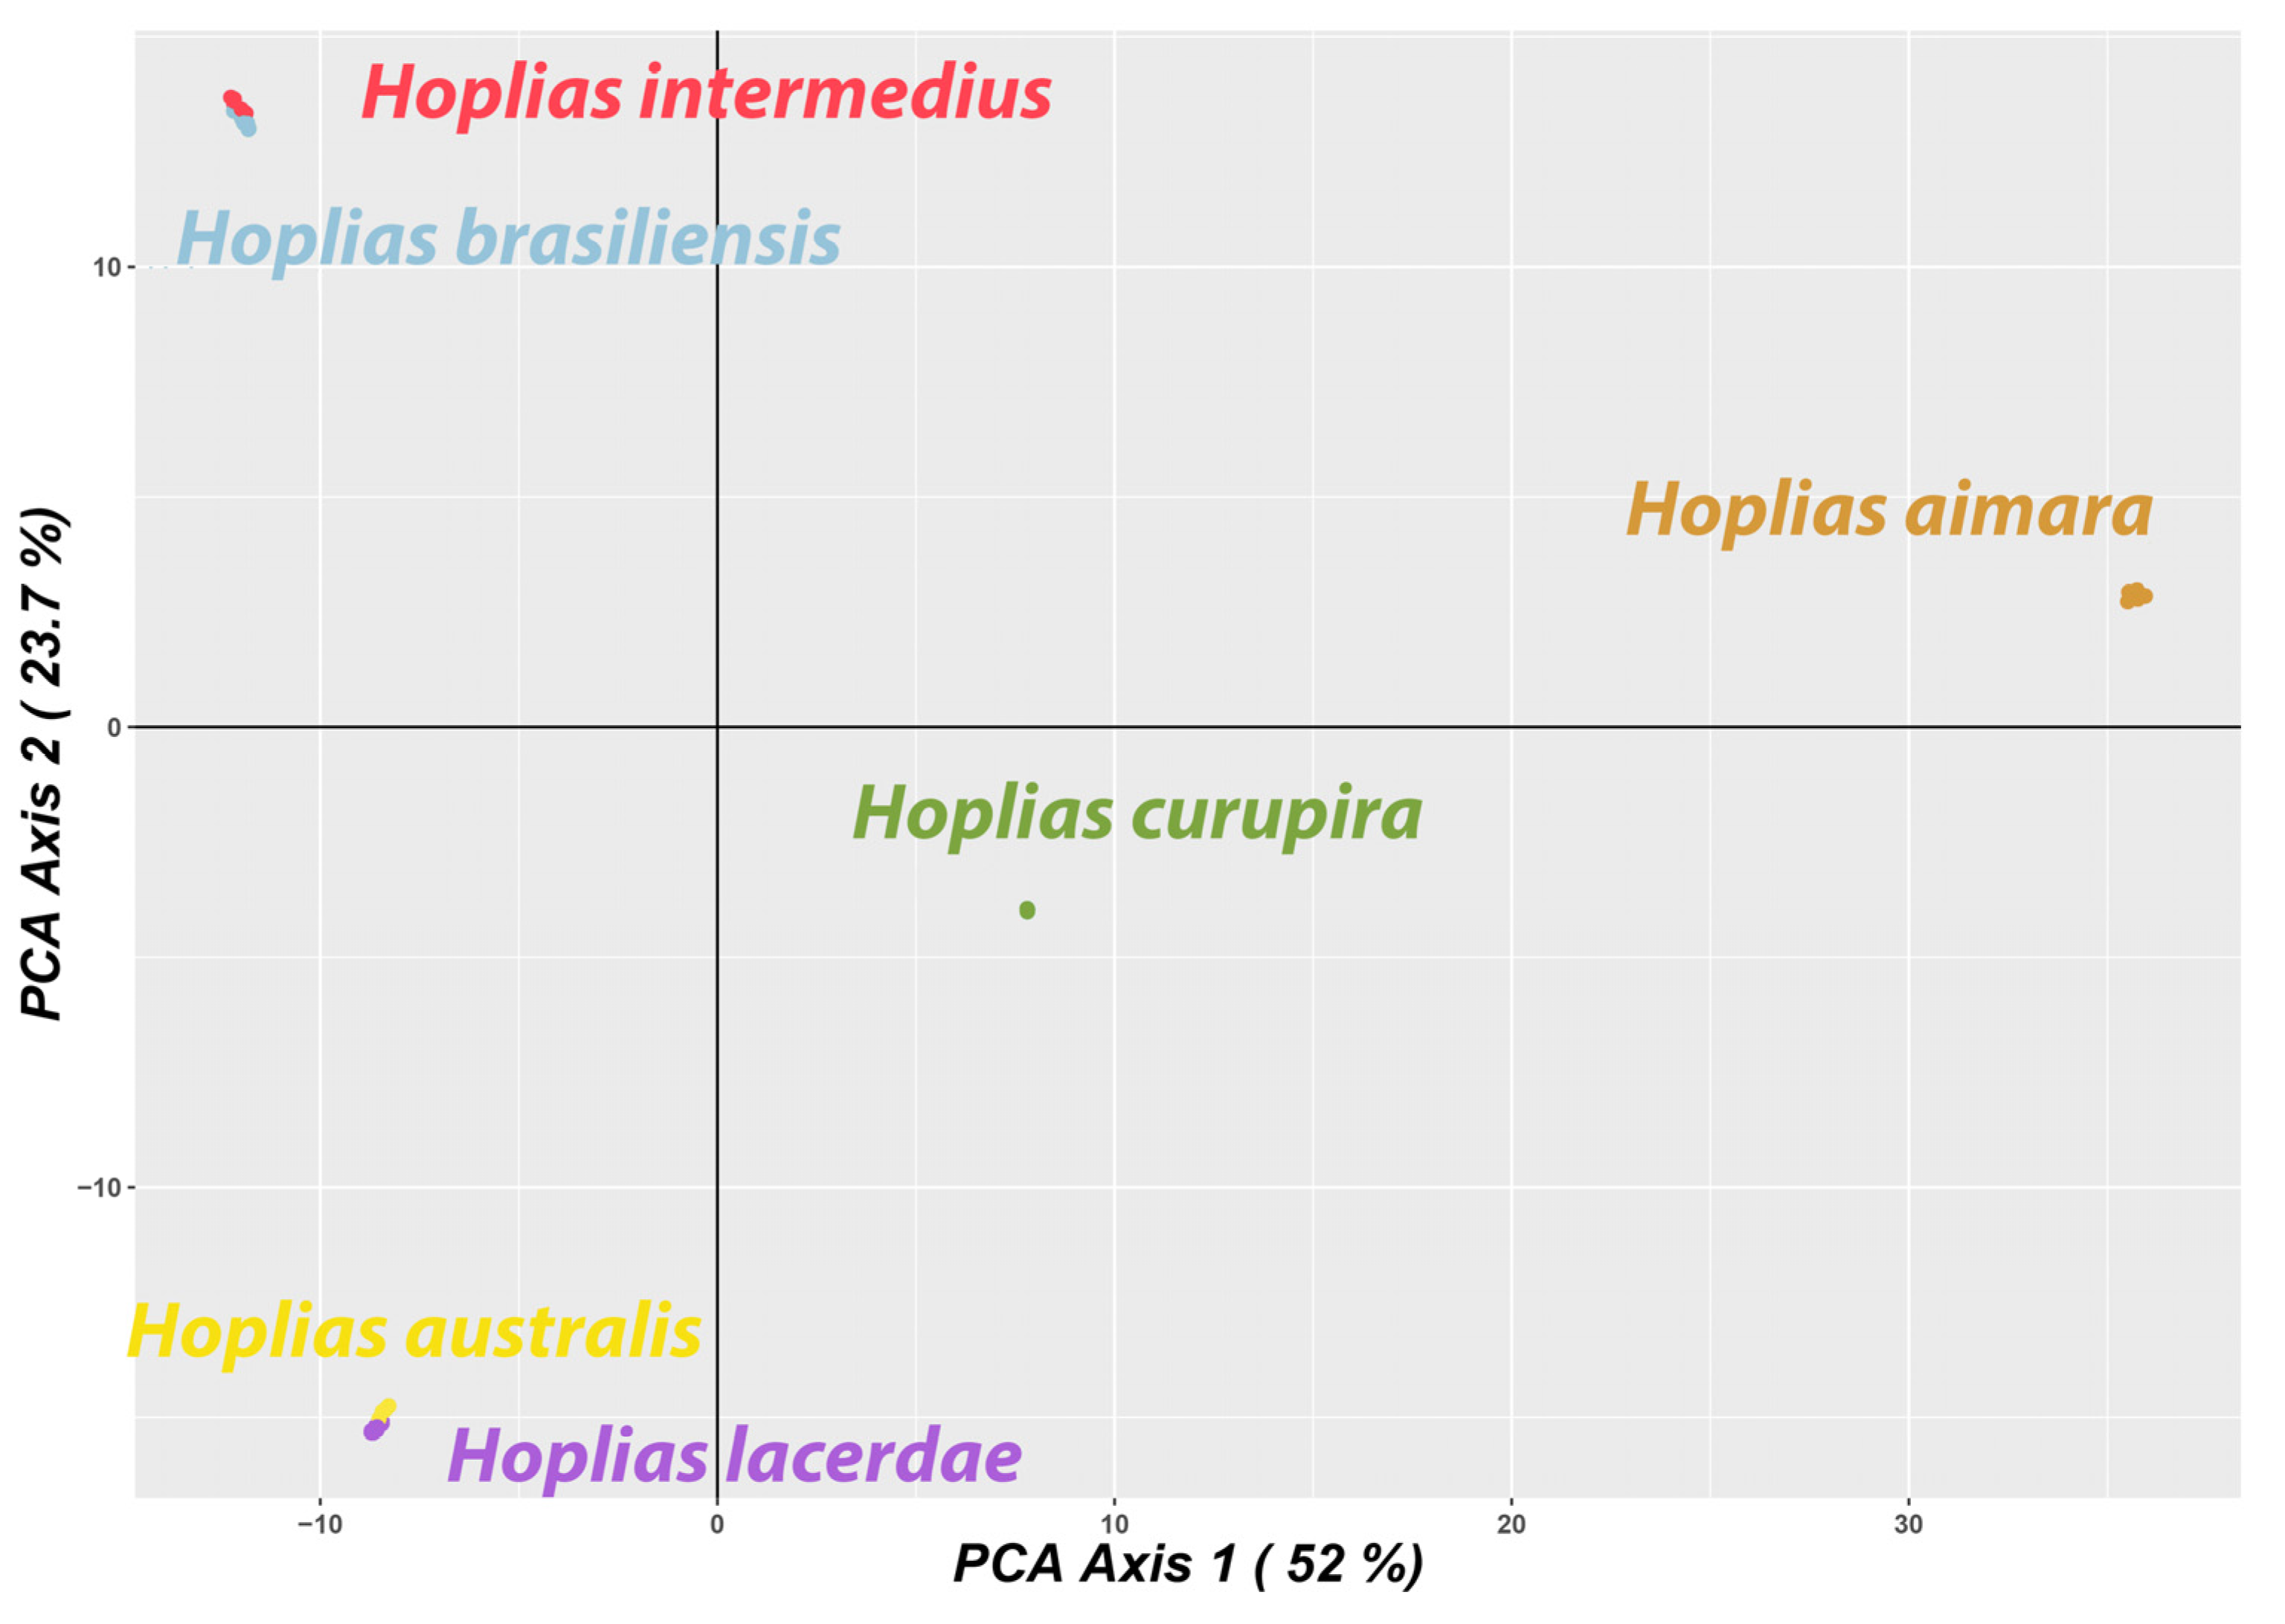 curupira program flow chart